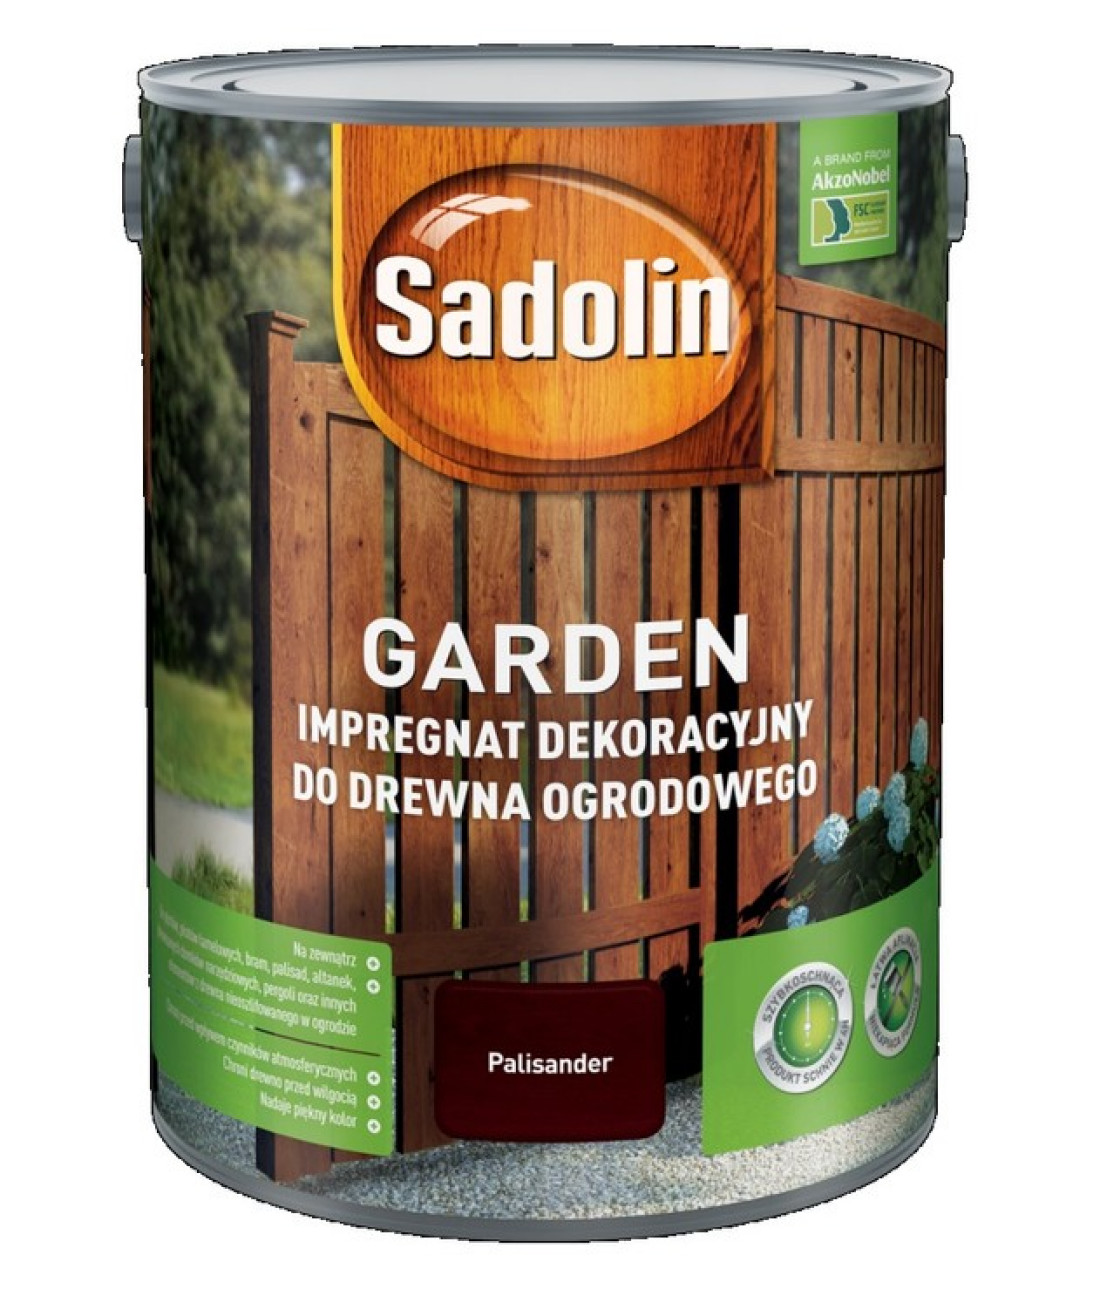 Sadolin Garden - impregnat dekoracyjny do drewna ogrodowego